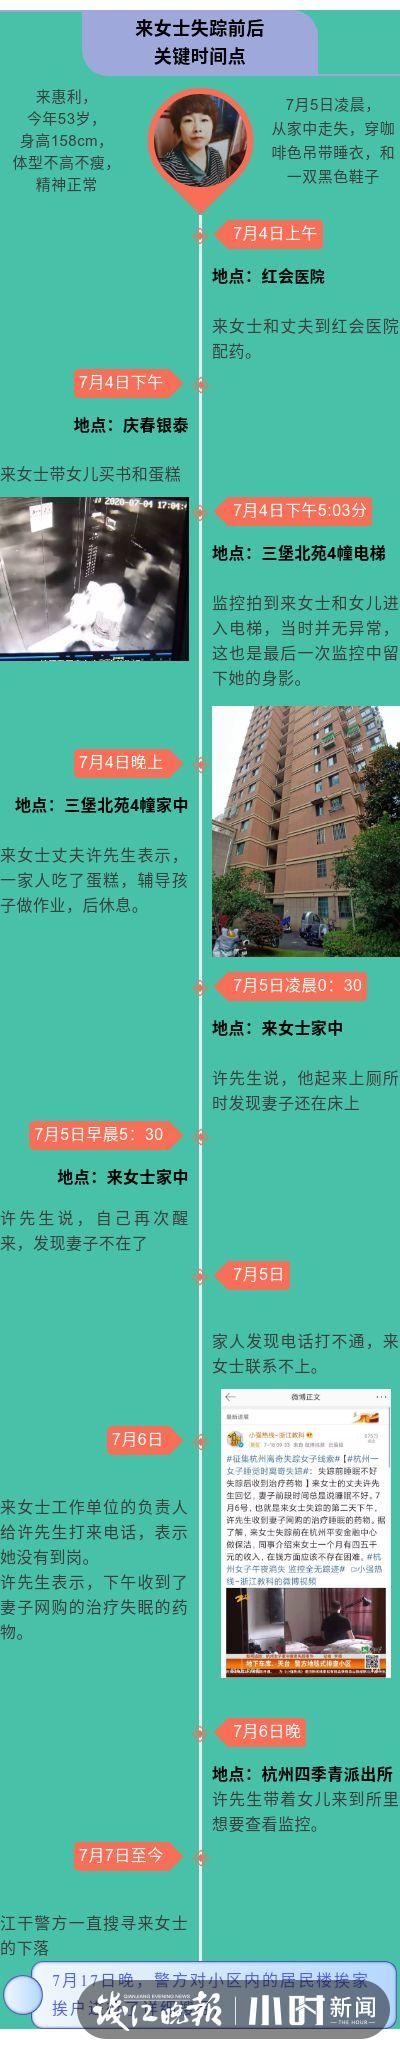 杭州女子离奇失踪 | 警方公布最新进展：来女士已被害，丈夫已被控制